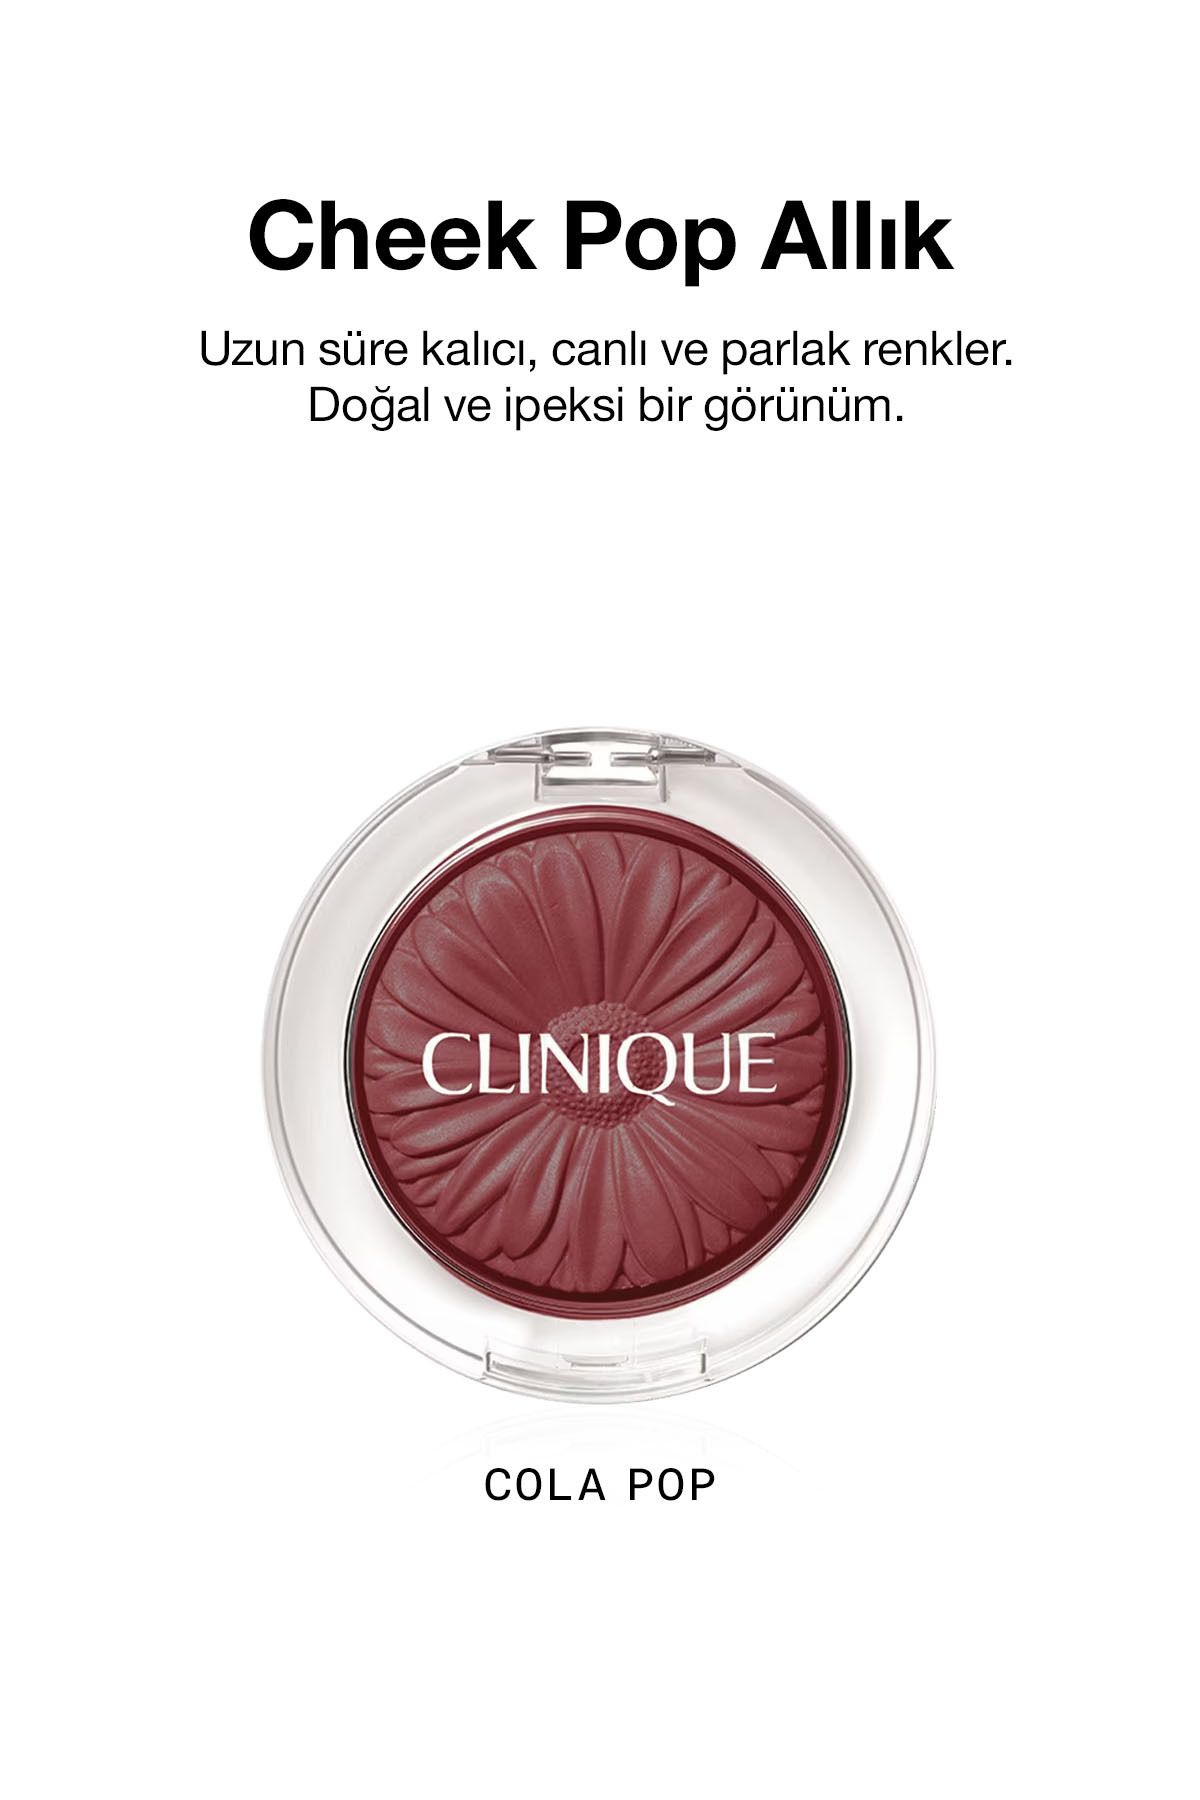 Clinique Cheek Pop Allık - Cola Pop 3.5gm/.12oz 192333101179